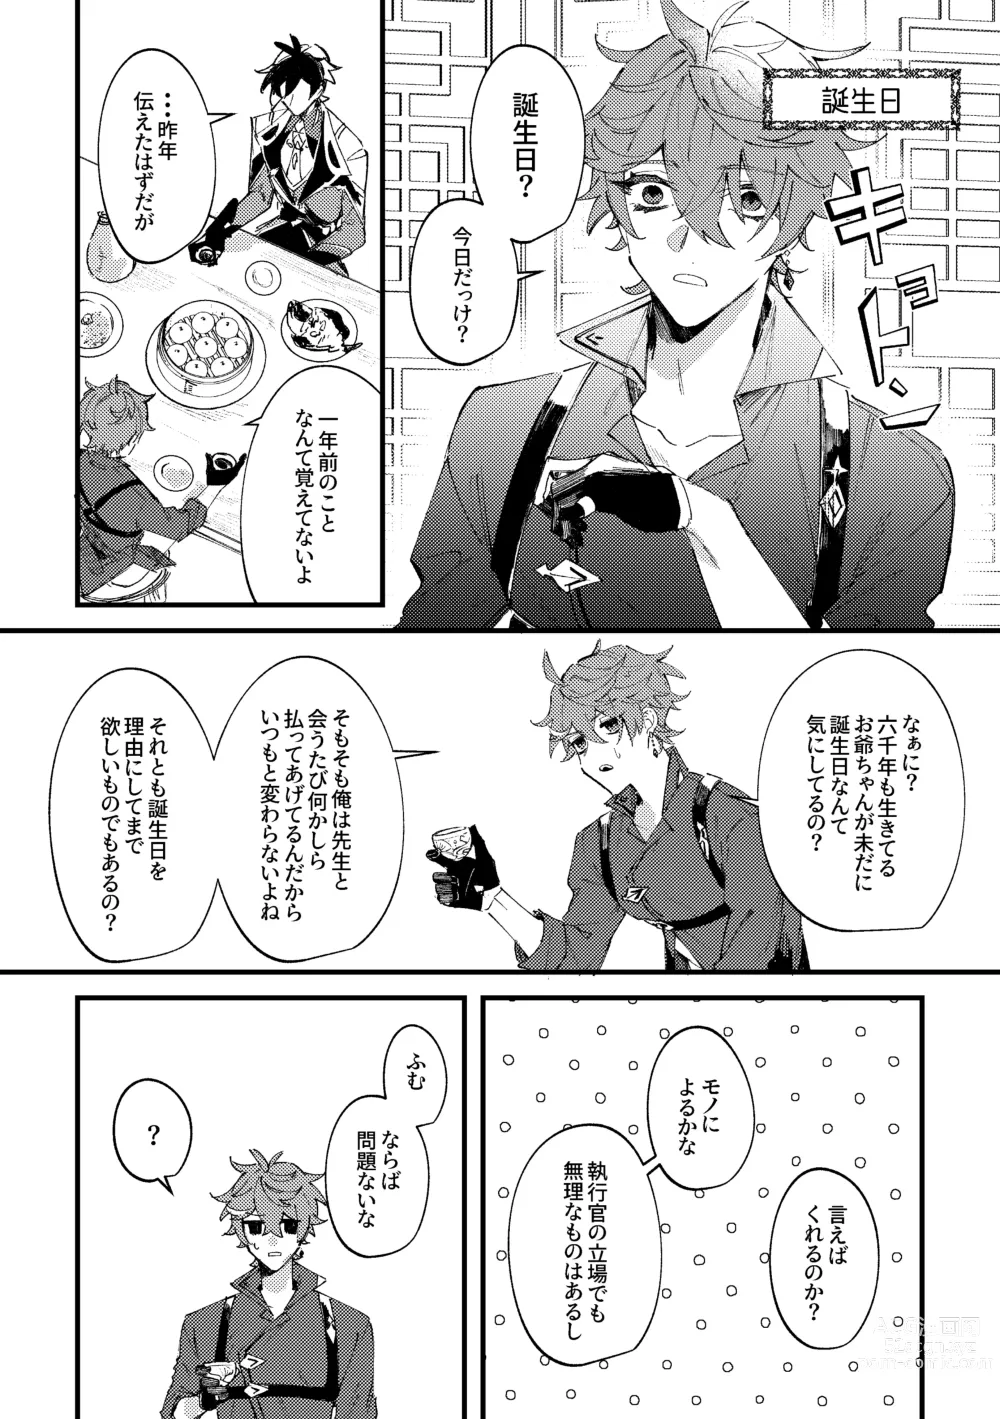 Page 17 of doujinshi Kiseki